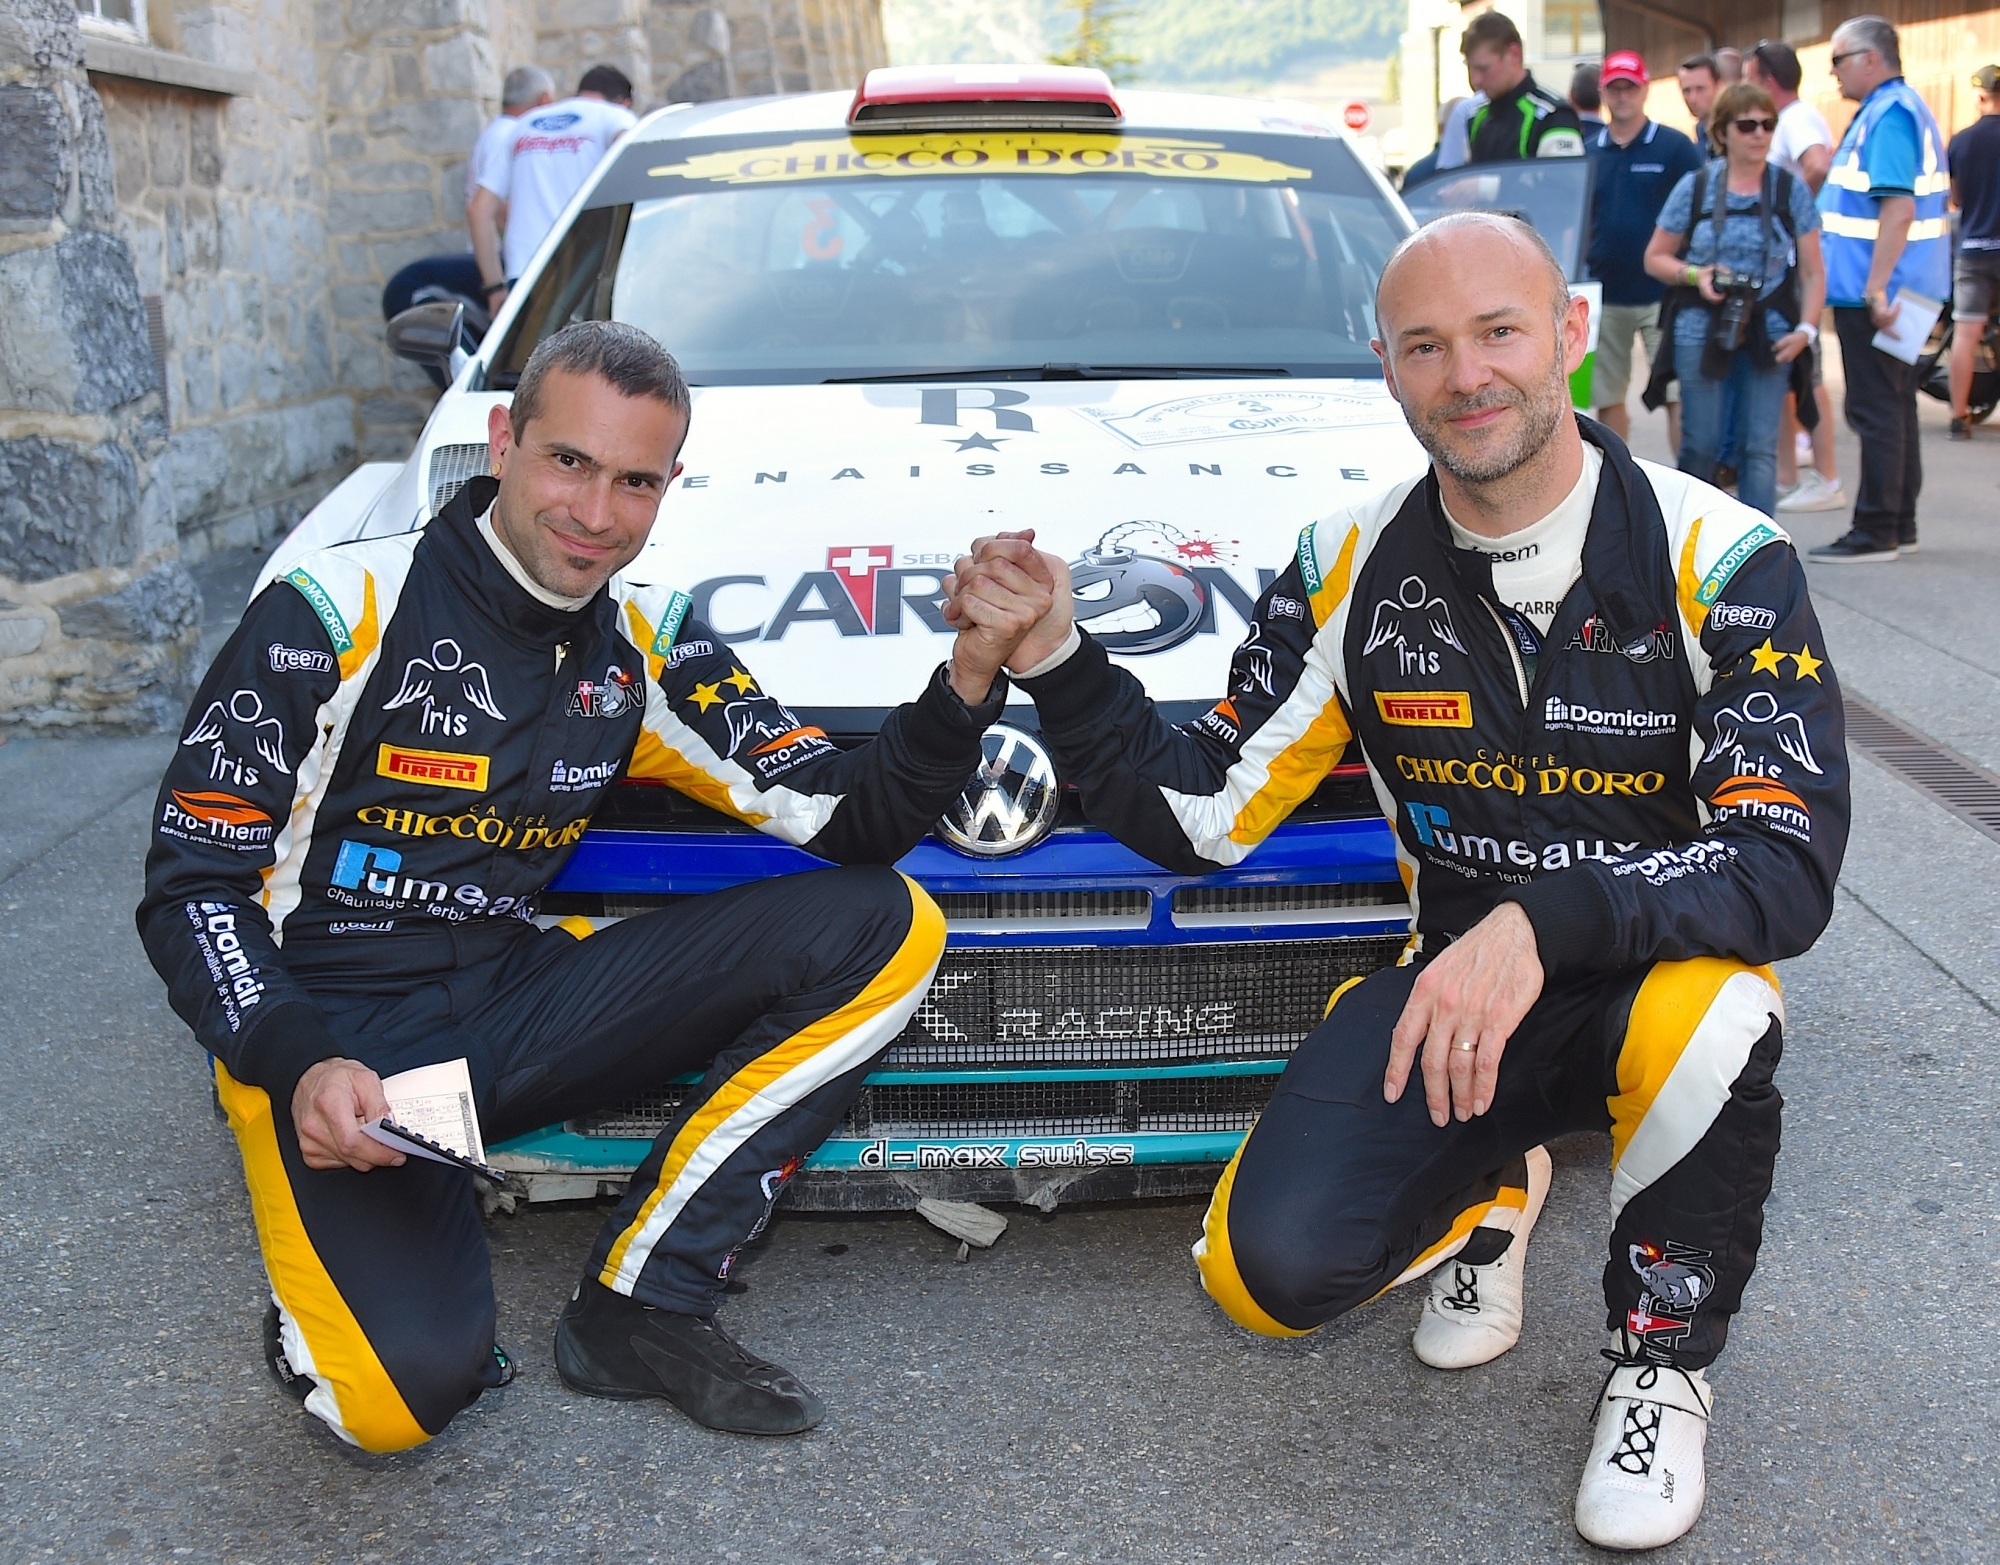 Lucien Revaz et Sébastien Carron sont les derniers vainqueurs du Rallye du Chablais. Ils s'y étaient imposés en 2019 avant que l'édition de 2020 ne soit annulée en raison de la crise sanitaire.